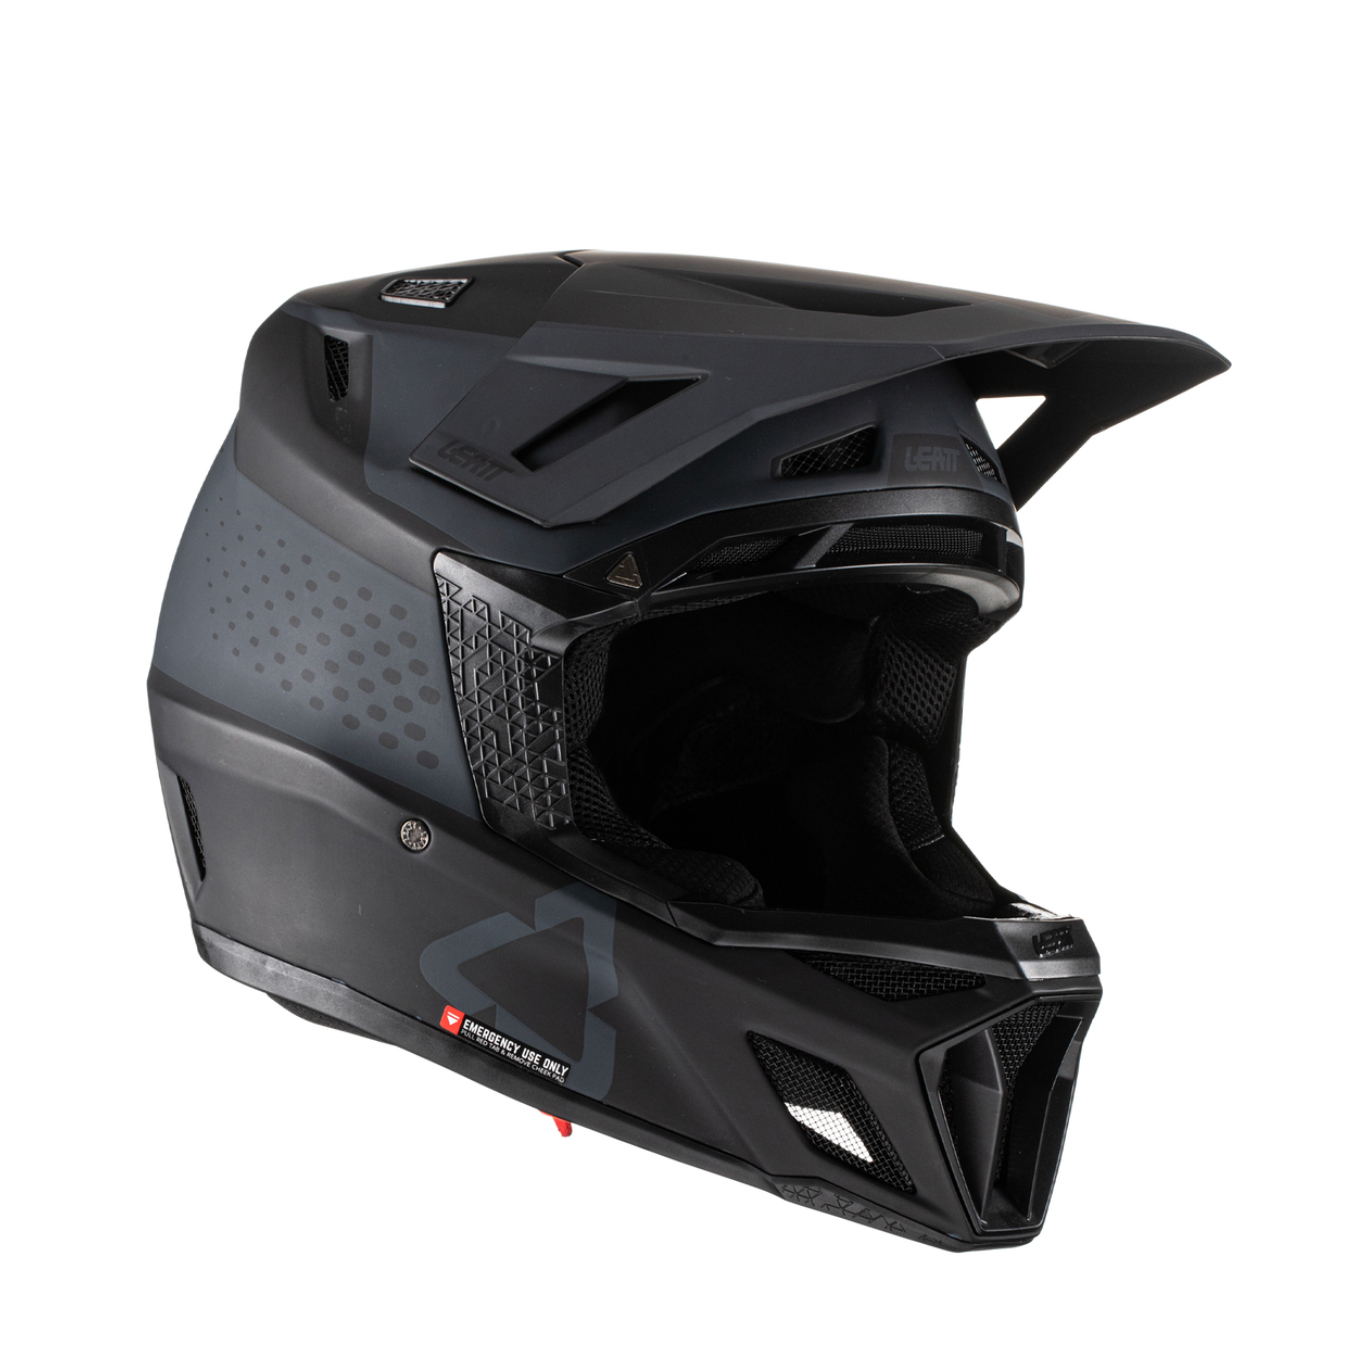 Leatt MTB 8.0 Full Face Helmet, Large (59-60cm), Black